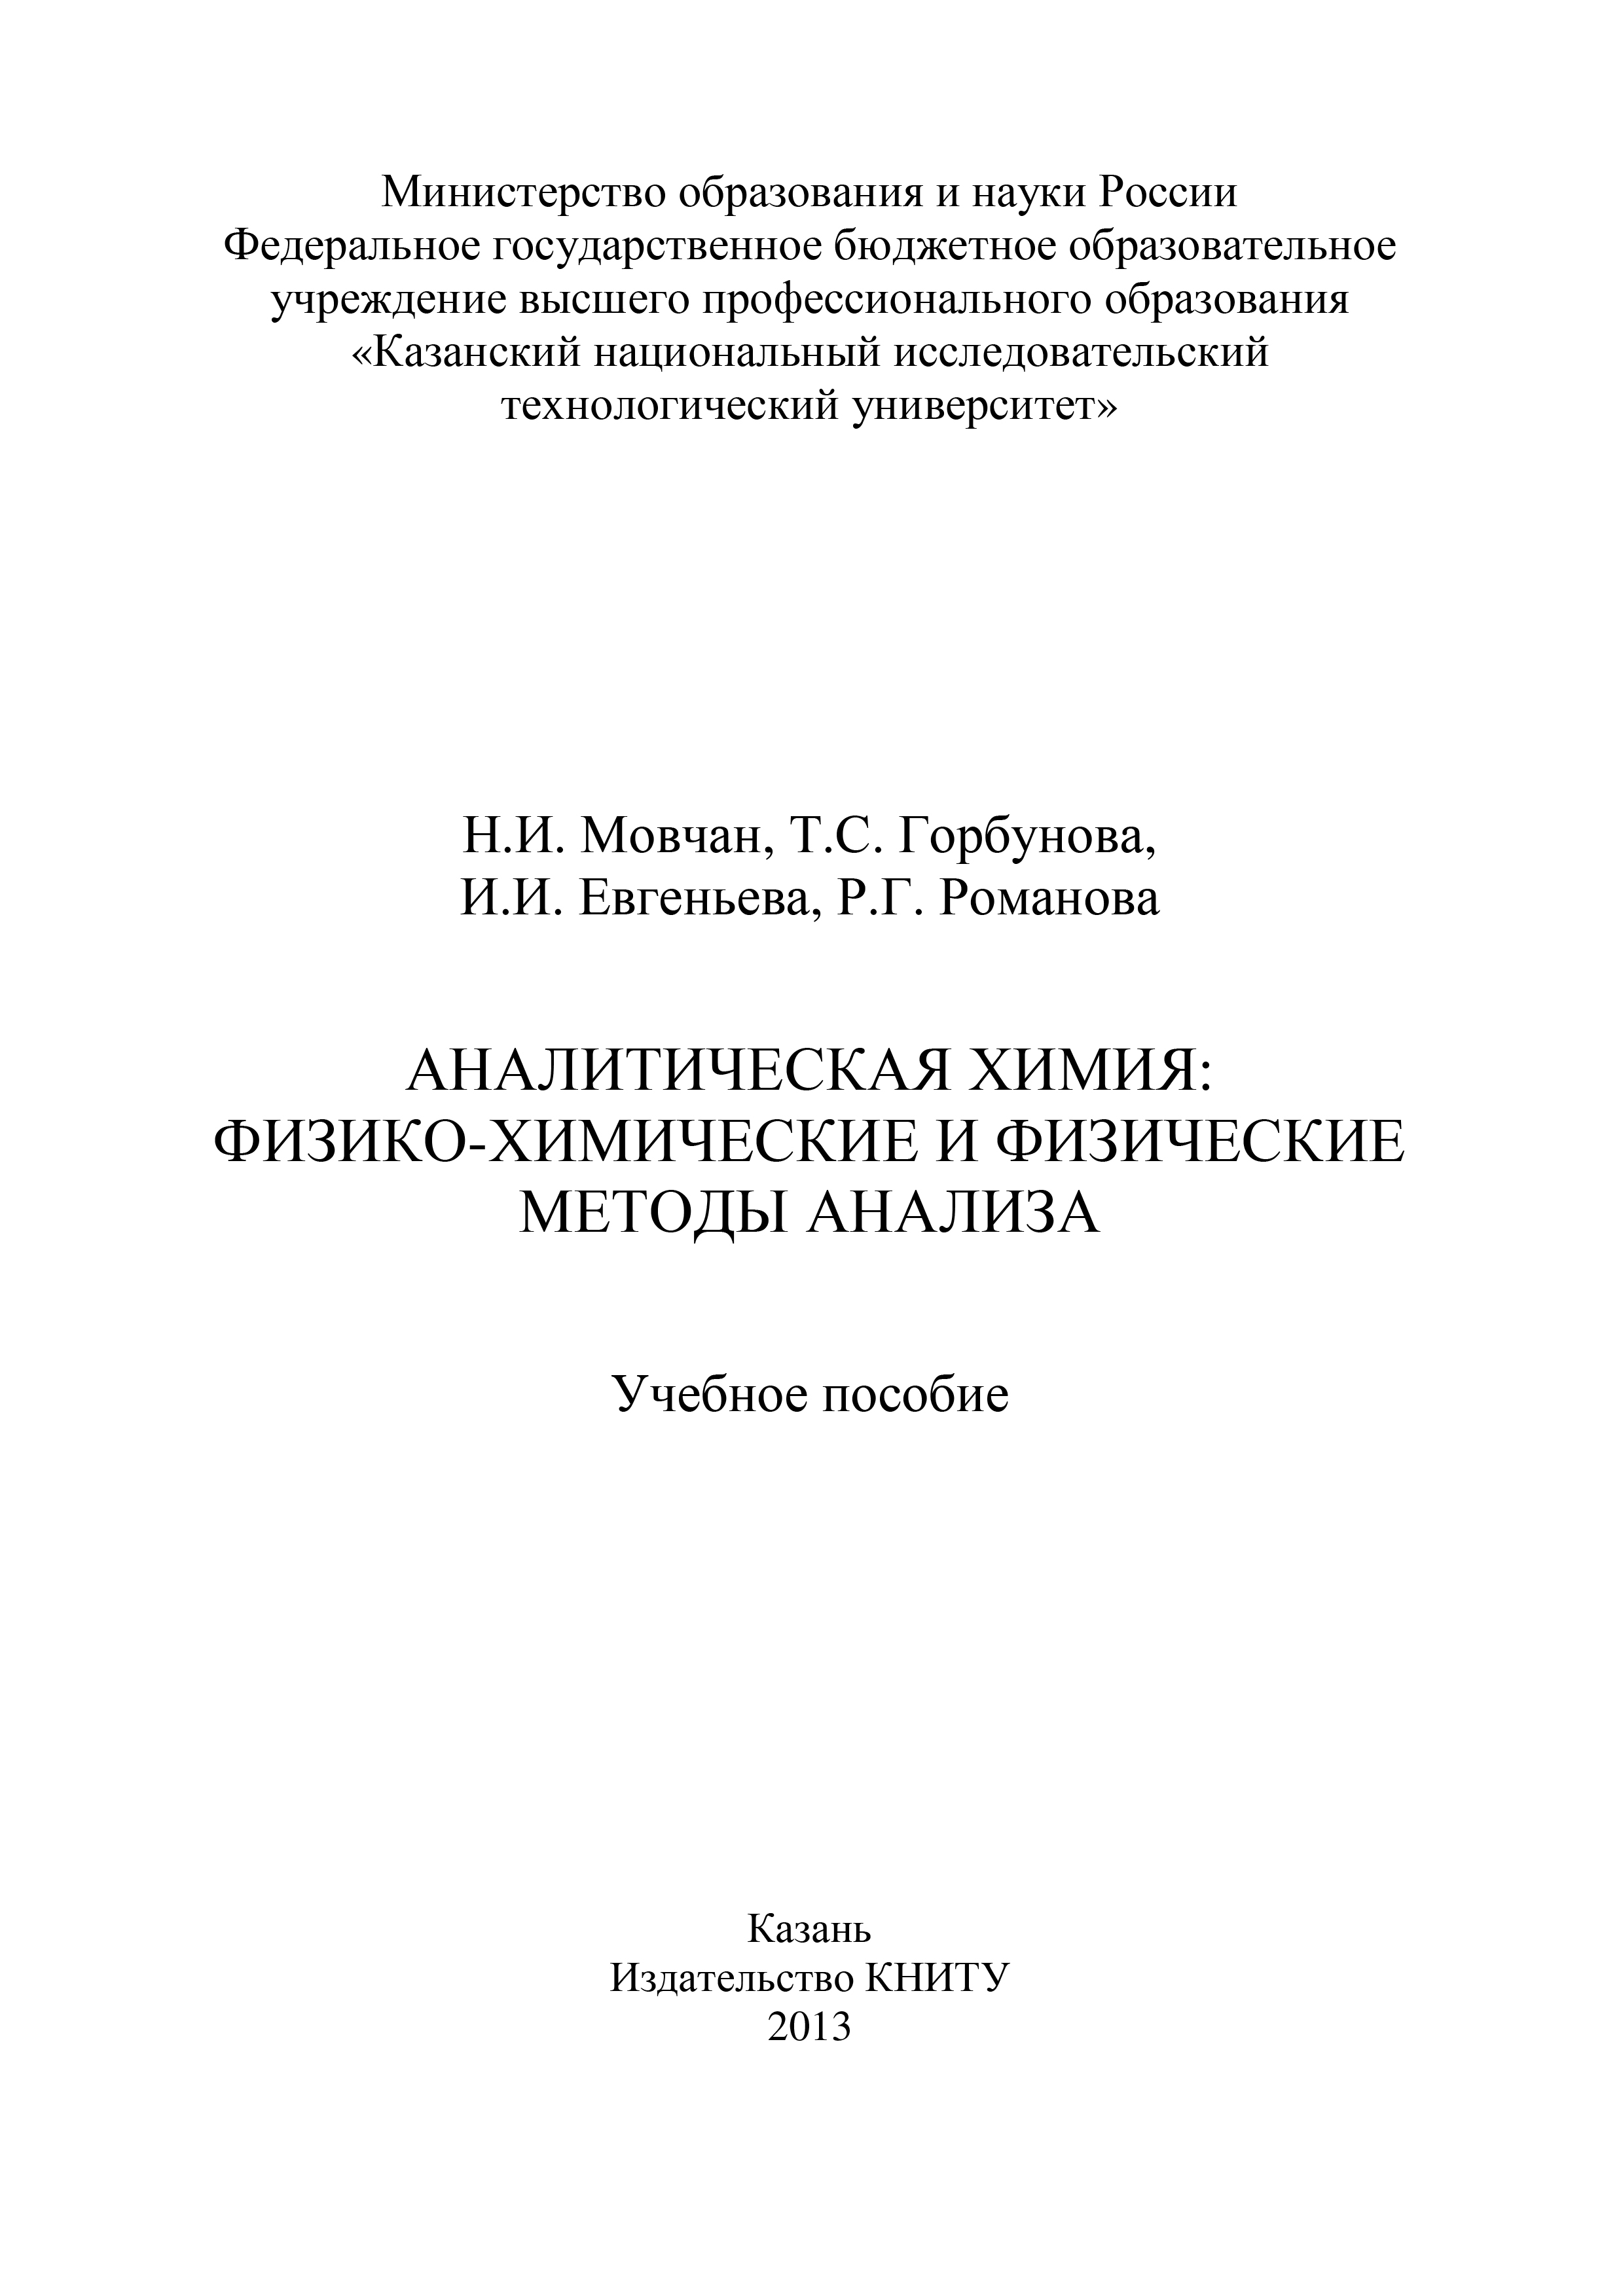 Т. Горбунова Аналитическая химия: физико-химические и физические методы анализа